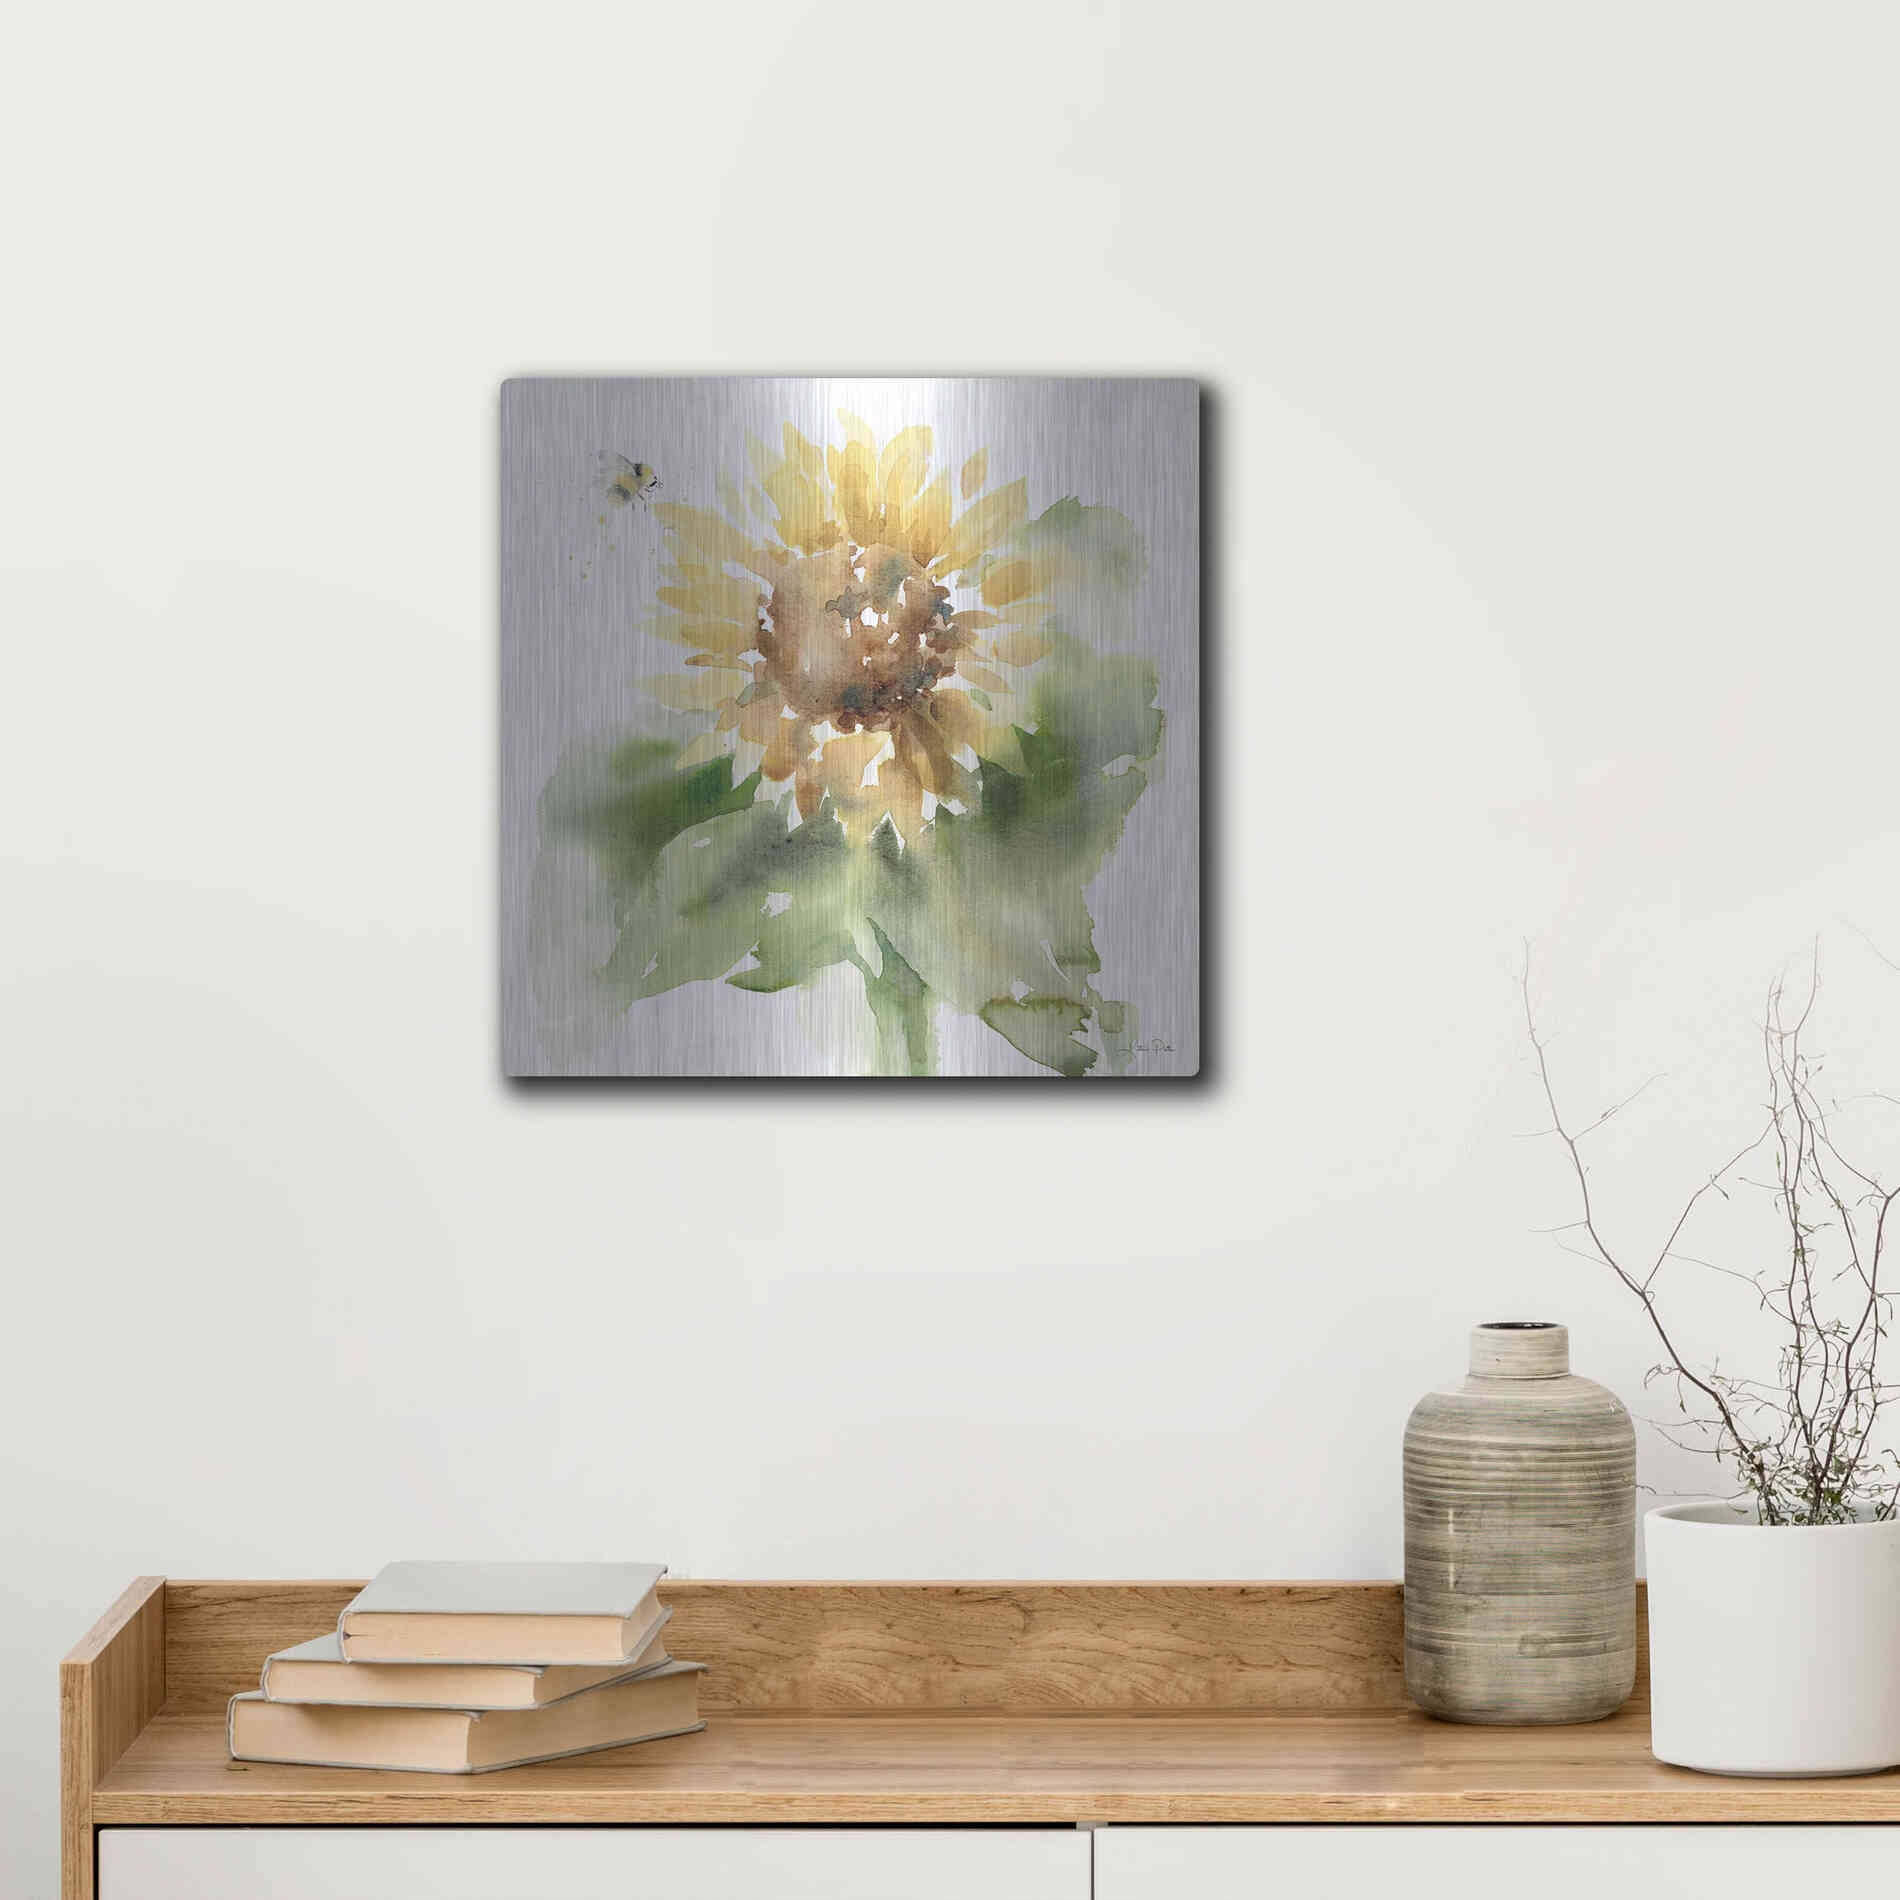 Luxe Metal Art 'Sunflower Meadow III' by Katrina Pete, Metal Wall Art,12x12